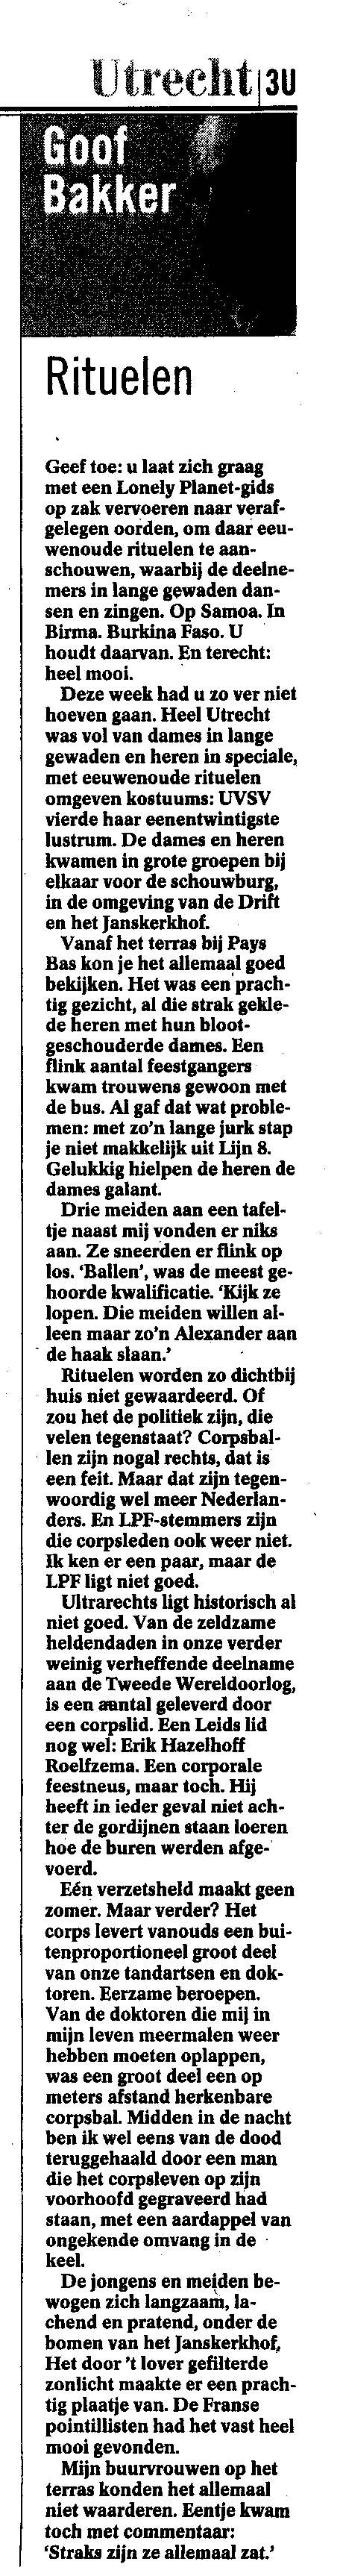 Volkskrant_2004-05-22-Rituelen